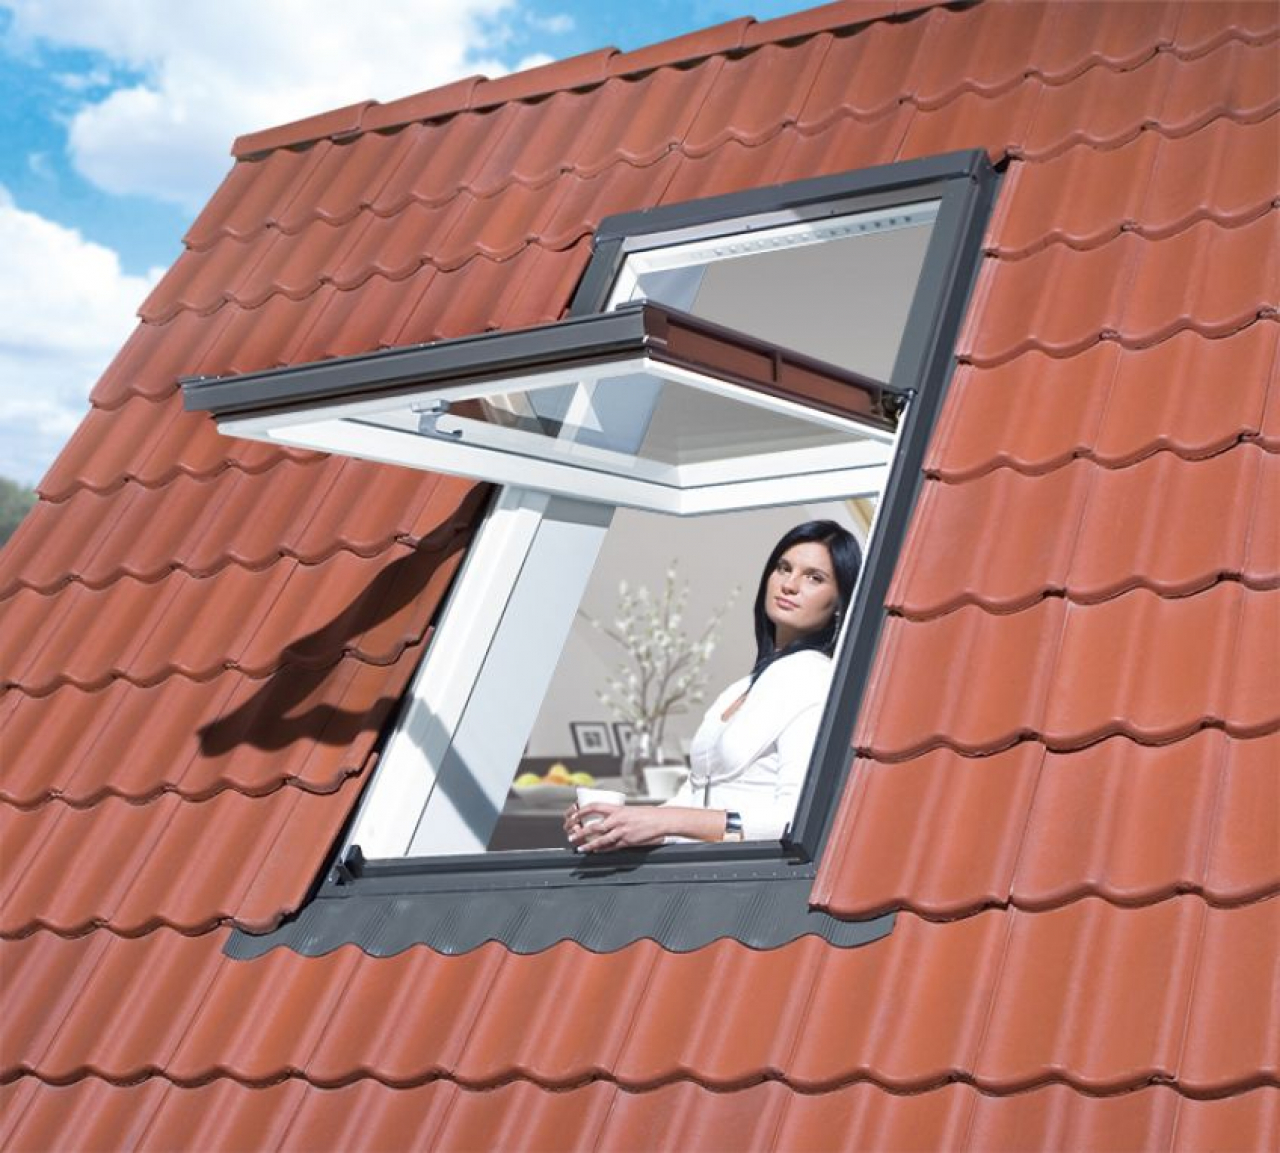 Fakro PYP-V U3 proSky Megemelt forgástengelyű tetőtéri ablakok